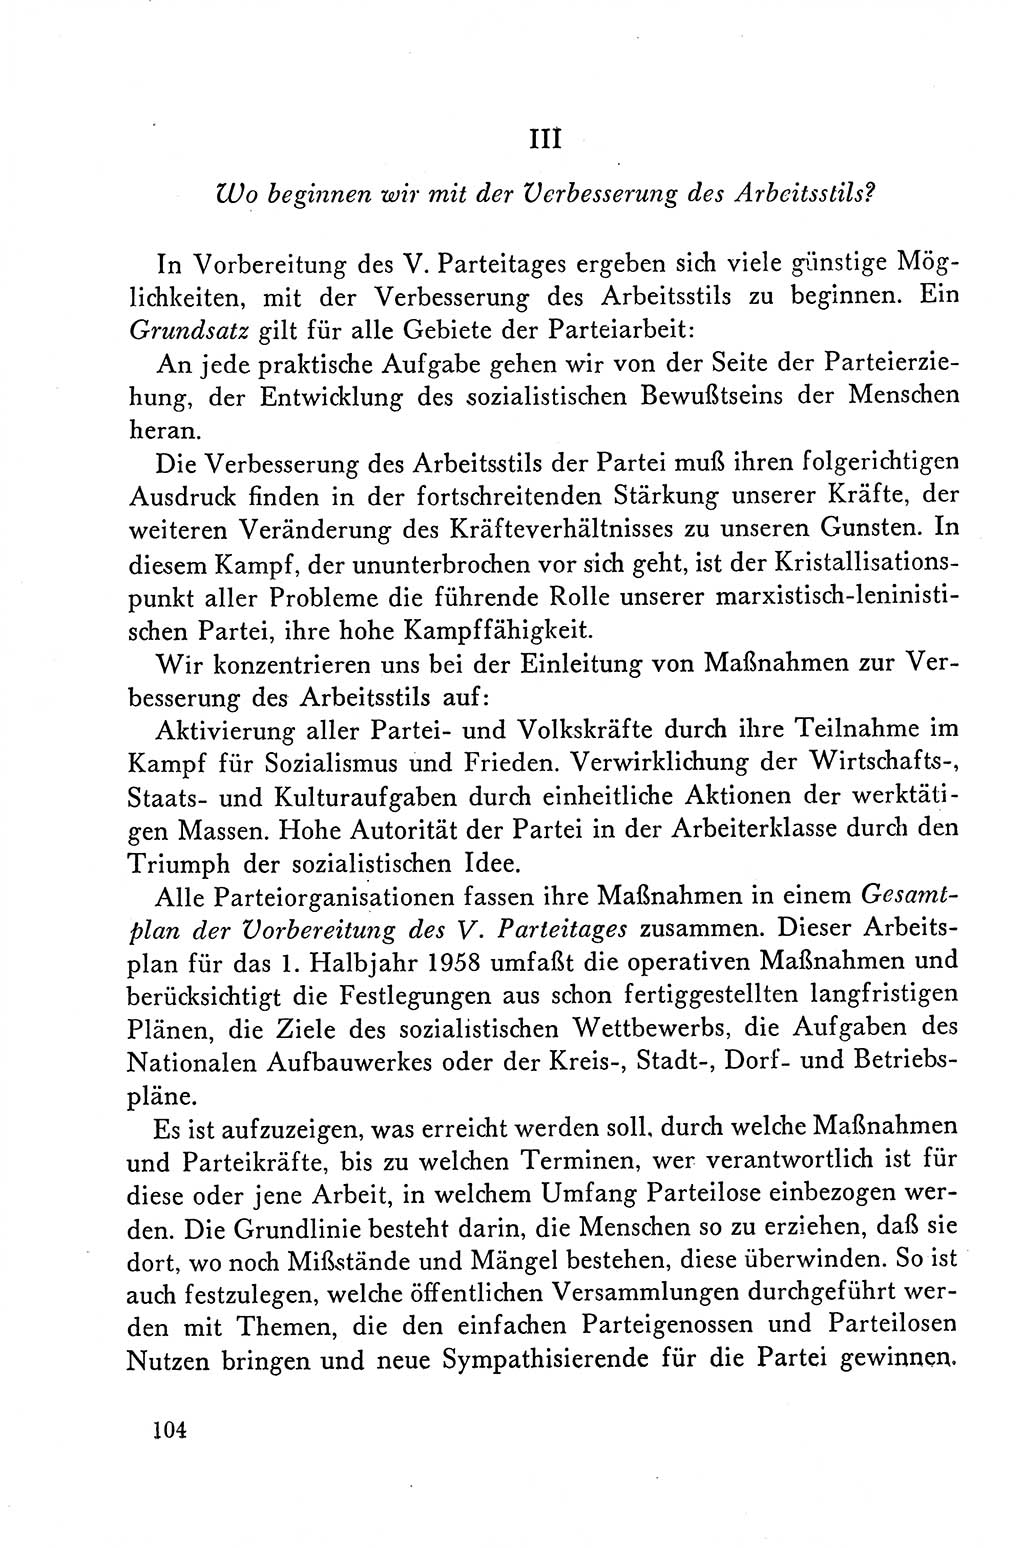 Dokumente der Sozialistischen Einheitspartei Deutschlands (SED) [Deutsche Demokratische Republik (DDR)] 1958-1959, Seite 104 (Dok. SED DDR 1958-1959, S. 104)